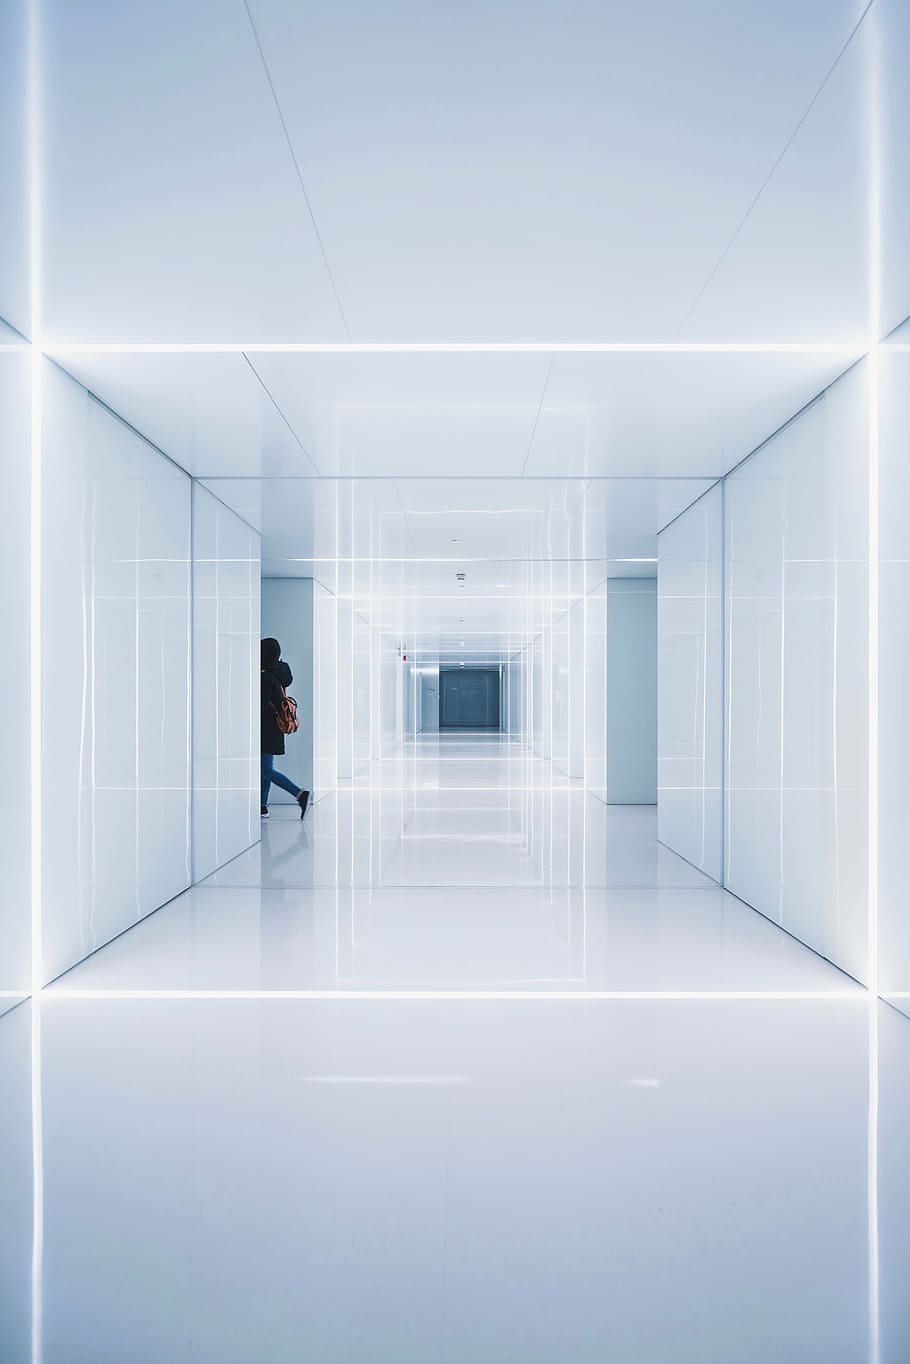 person, walking, inside, white, hallway, architecture, building, structure, establishment, symmetry